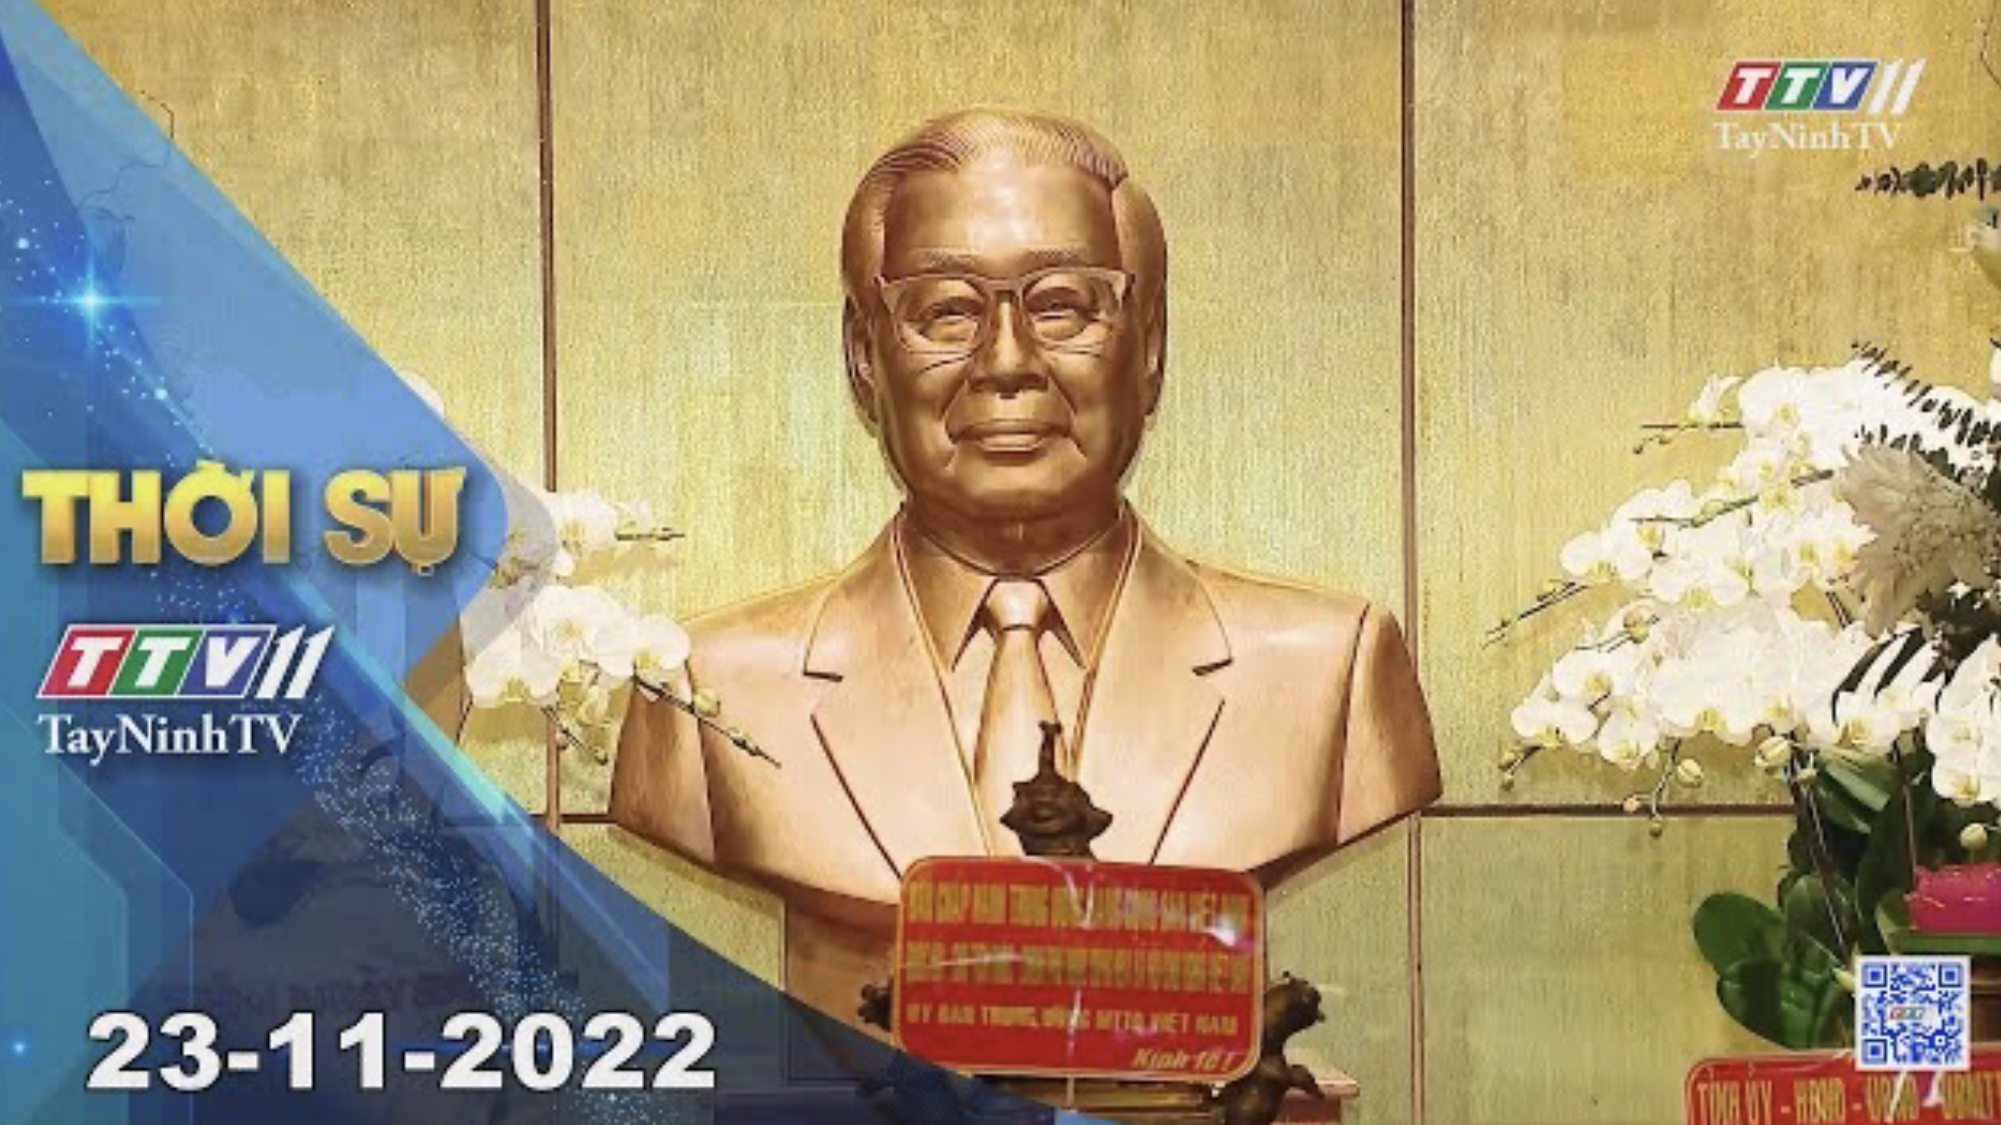 Thời sự Tây Ninh 23-11-2022 | Tin tức hôm nay | TayNinhTV